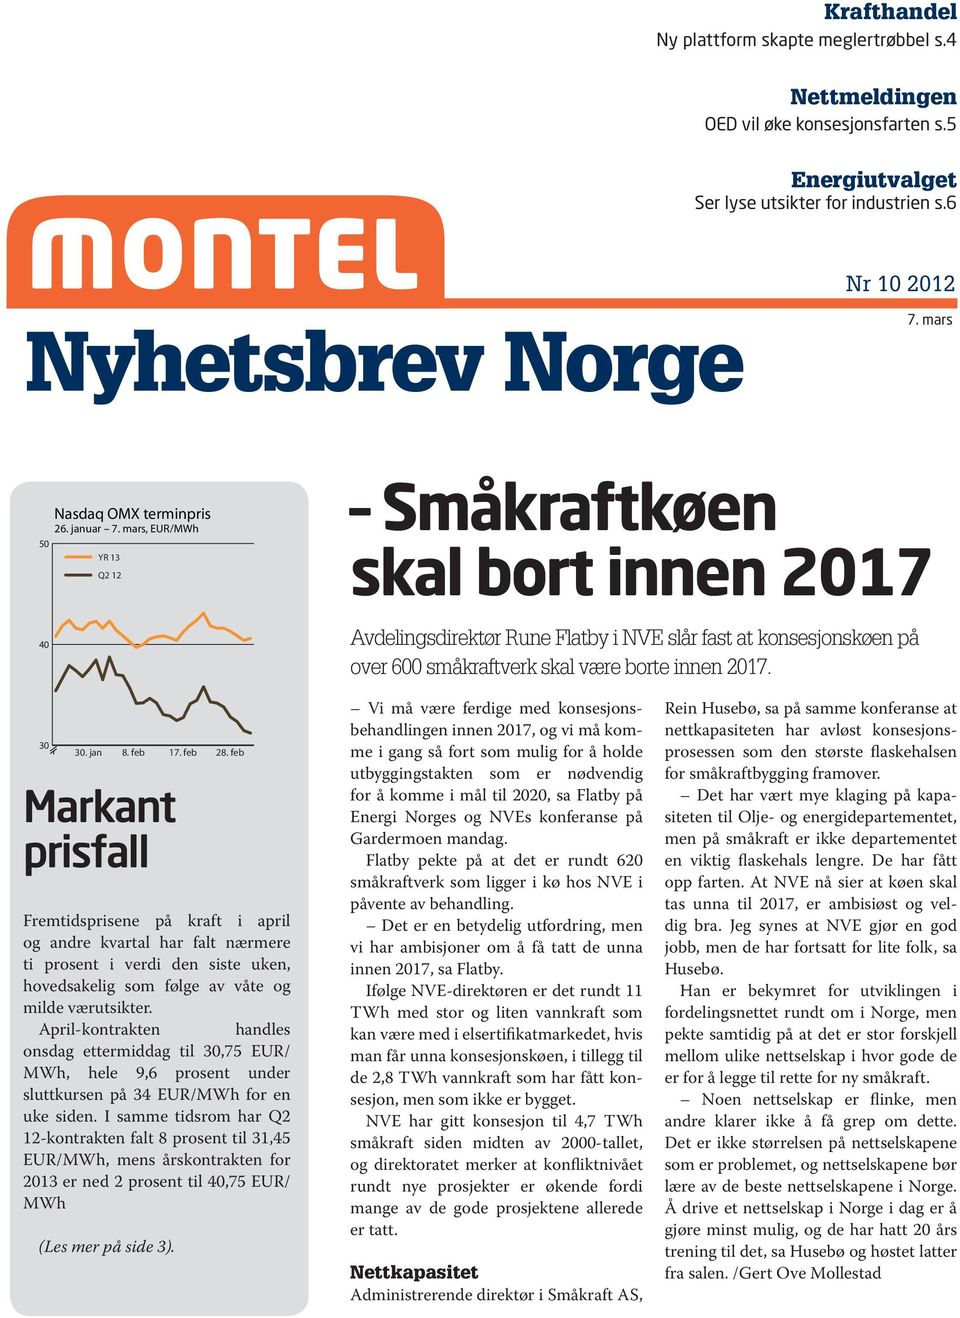 mars, EUR/MWh YR 13 Q2 12 Småkraftkøen skal bort innen 2017 Avdelingsdirektør Rune Flatby i NVE slår fast at konsesjonskøen på over 600 småkraftverk skal være borte innen 2017. 30 30. jan 8.